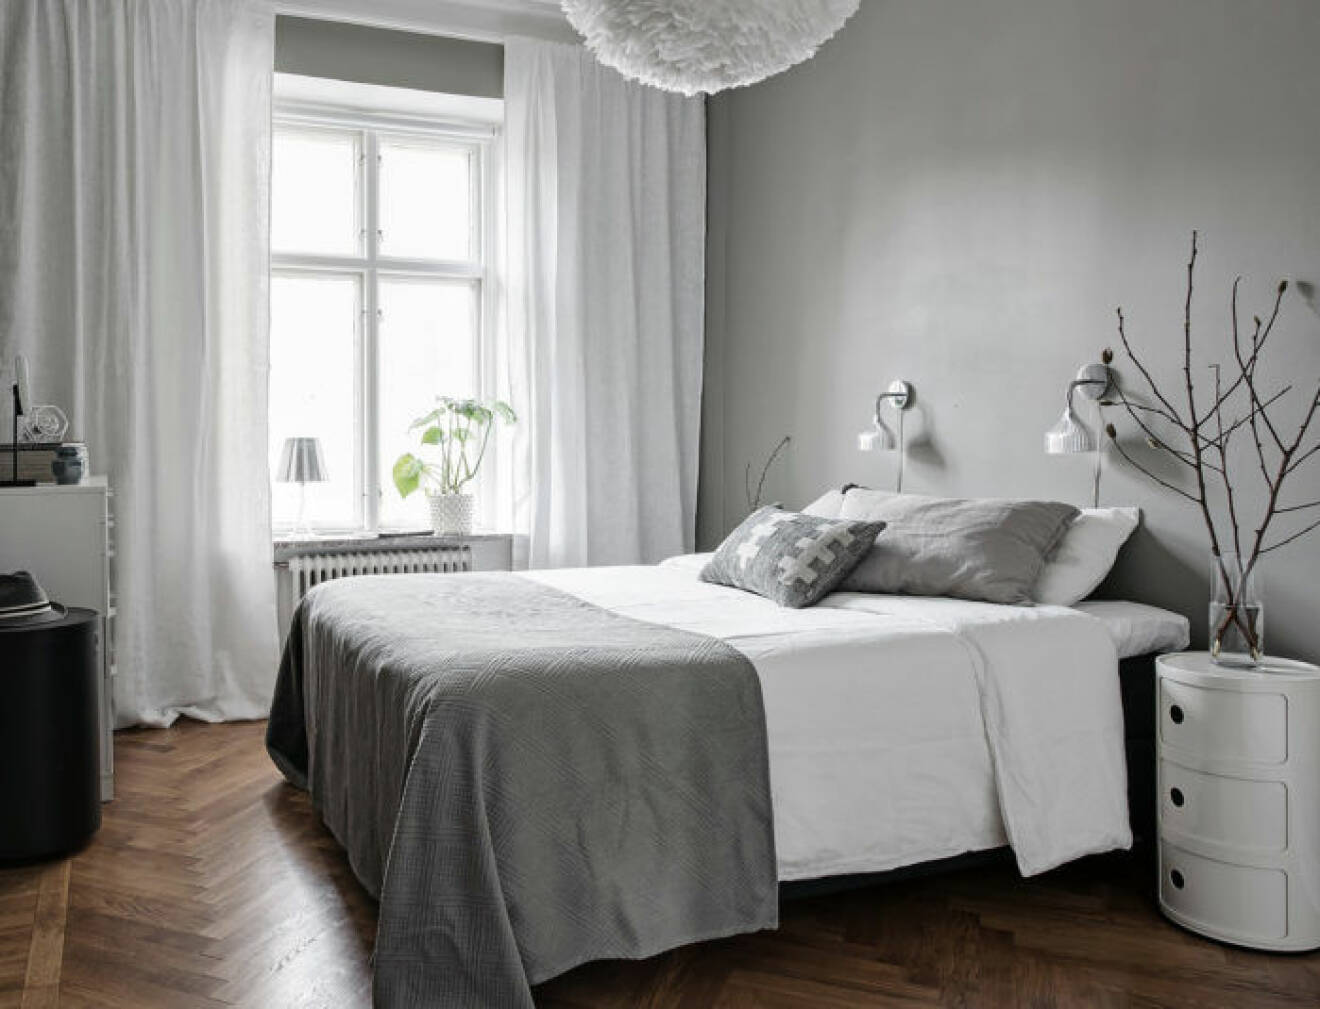 Sovrum med grå och vit inredning